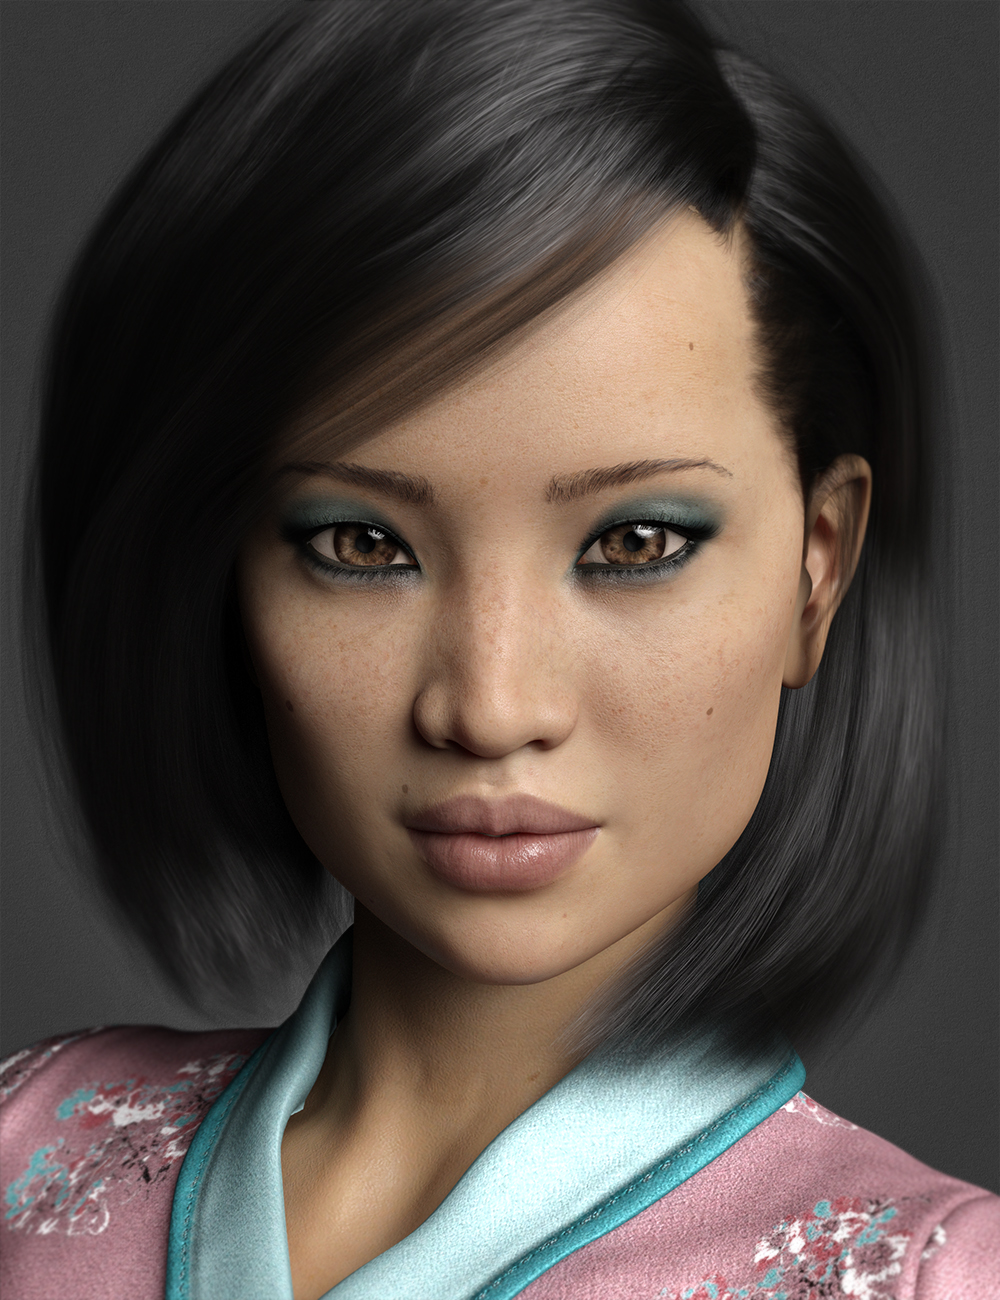 Yoshie HD for Mei Lin 8 by: Fred Winkler ArtSabby, 3D Models by Daz 3D